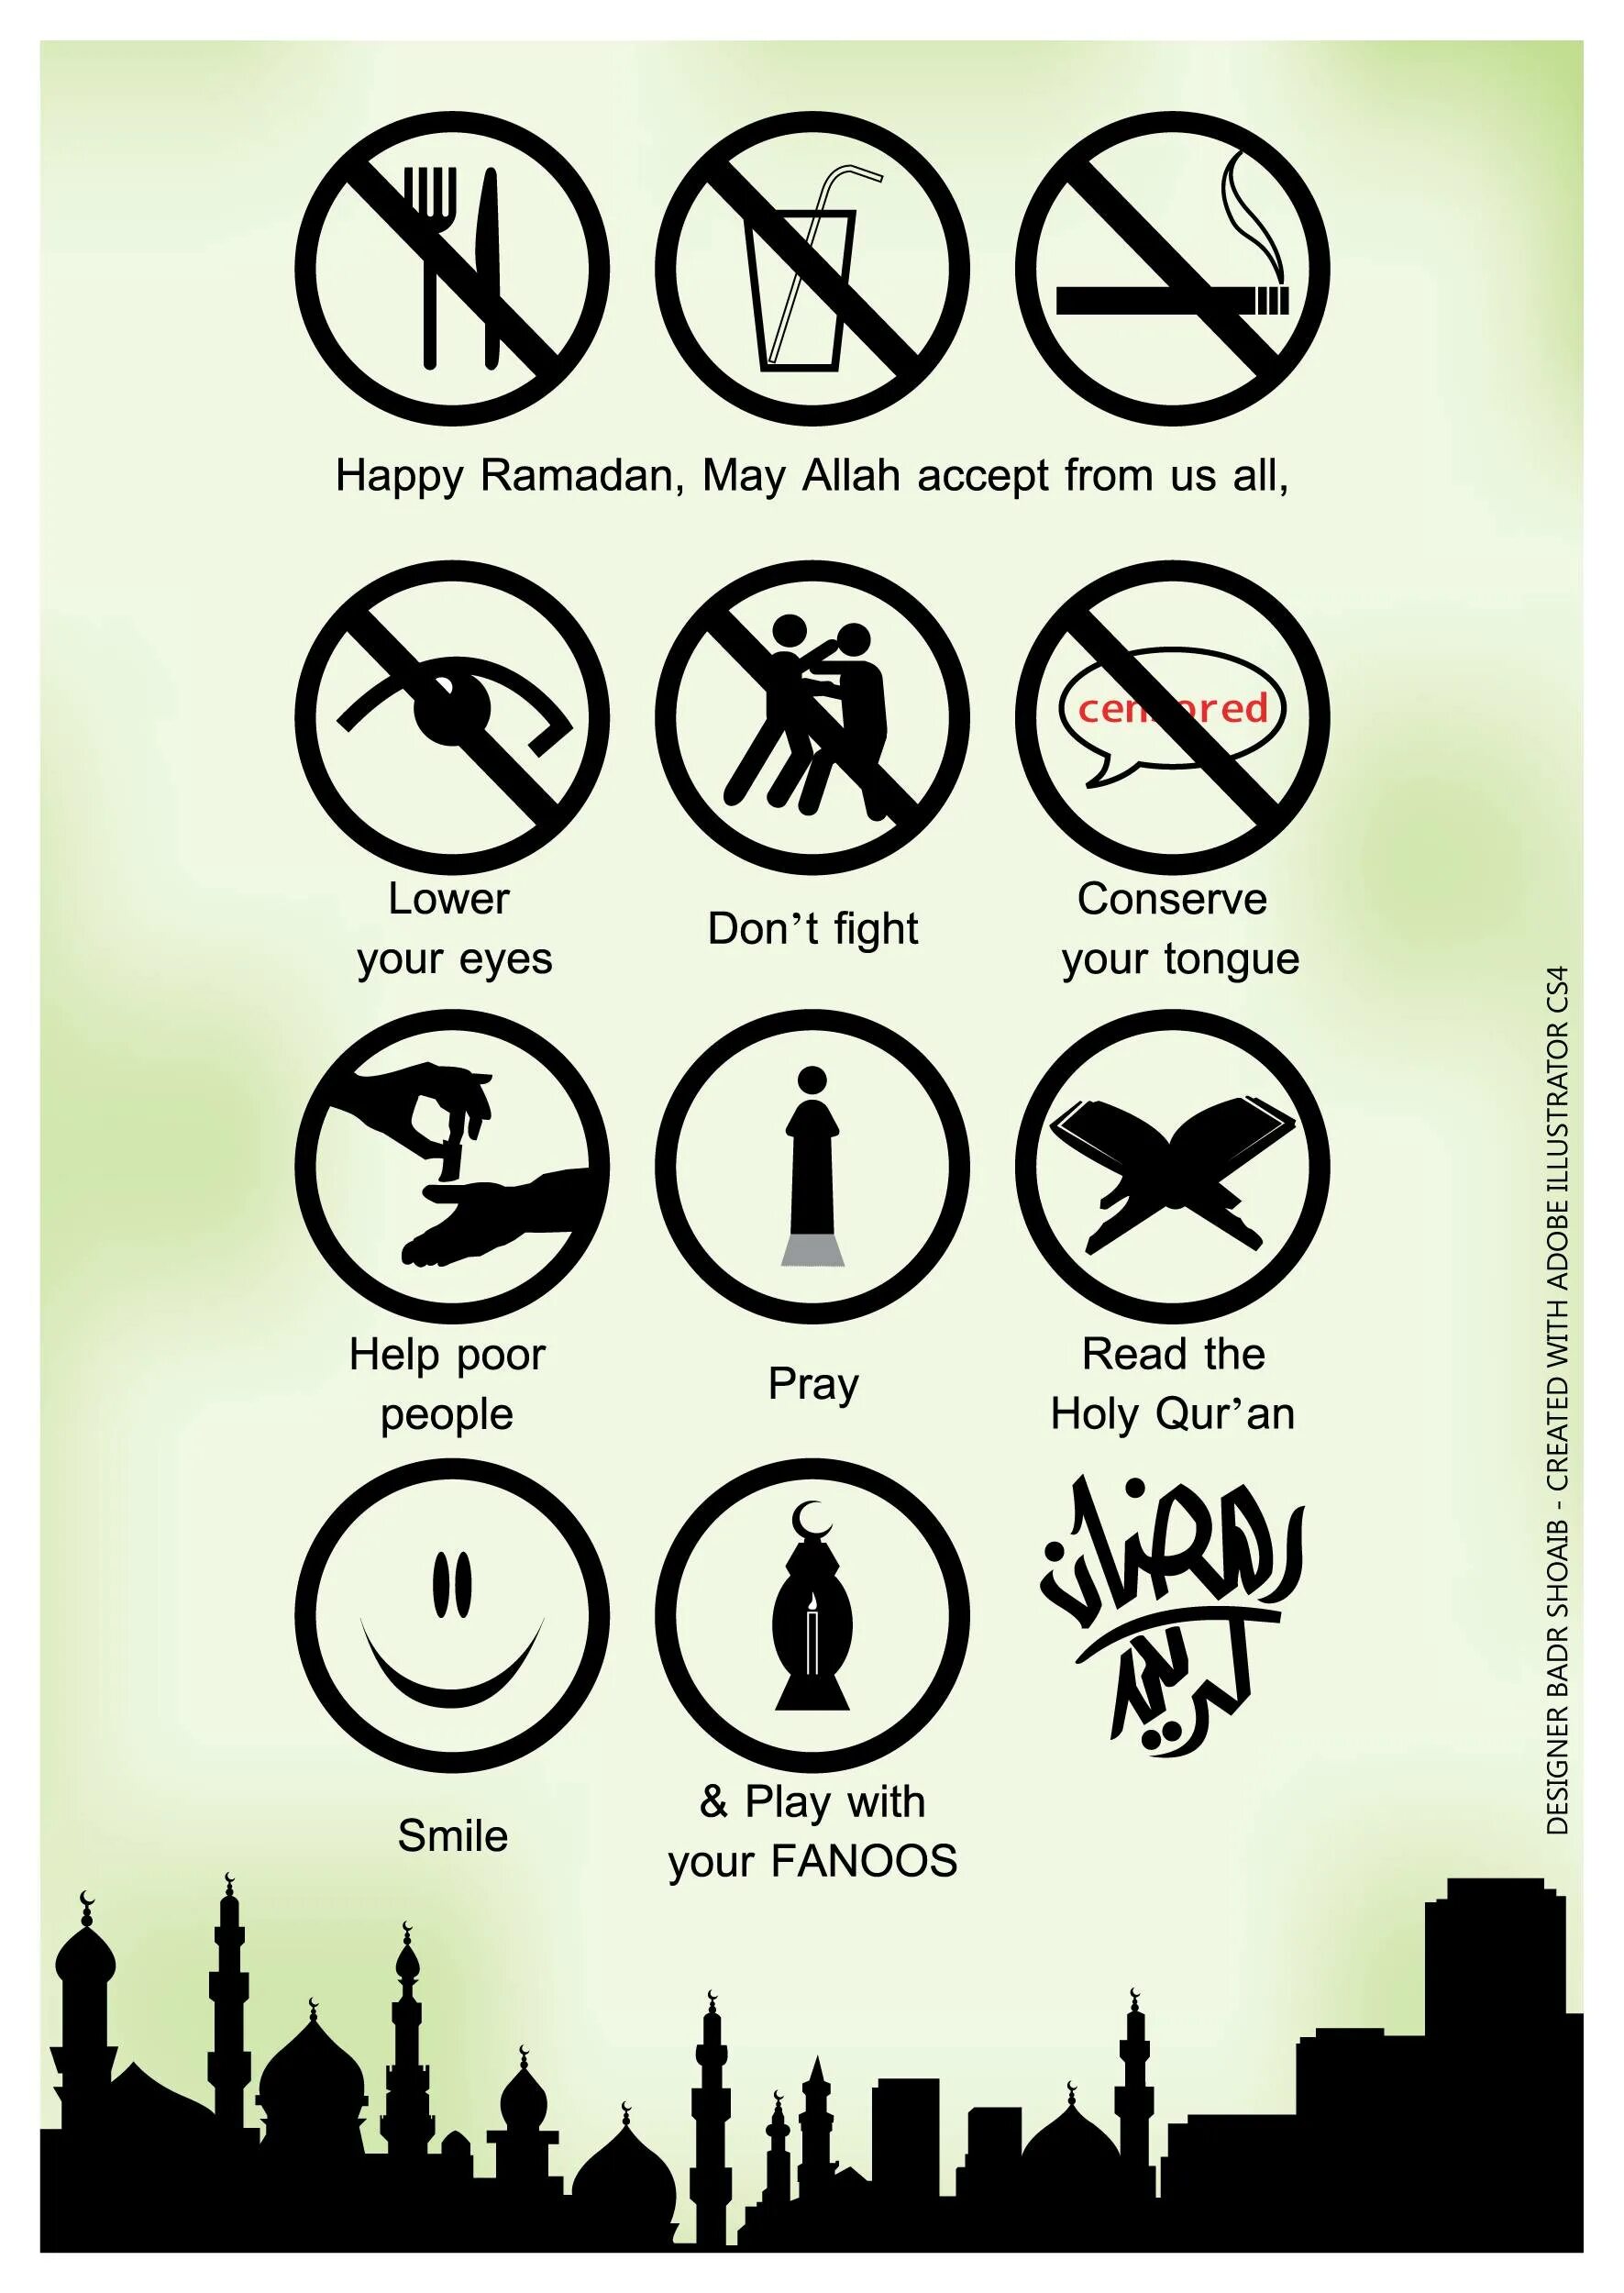 Что делать во время уразы. Рамадан. Что запрещено делать в Рамадан. Что запрещено делать в месяц Рамадан. Запреты в Рамадан для мужчин.